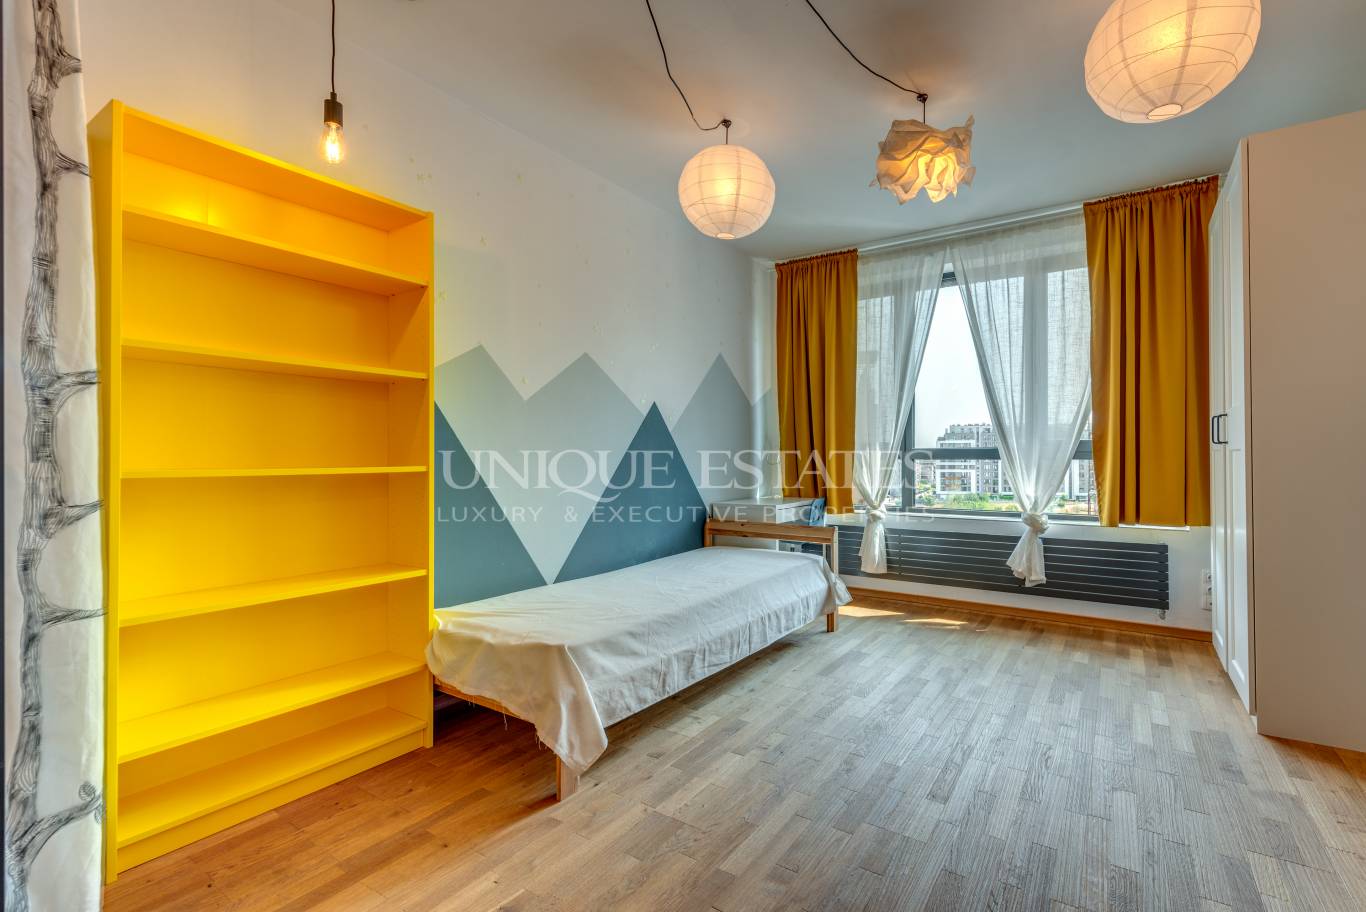 Апартамент под наем в София, Манастирски ливади - изток - код на имота: N17705 - image 7